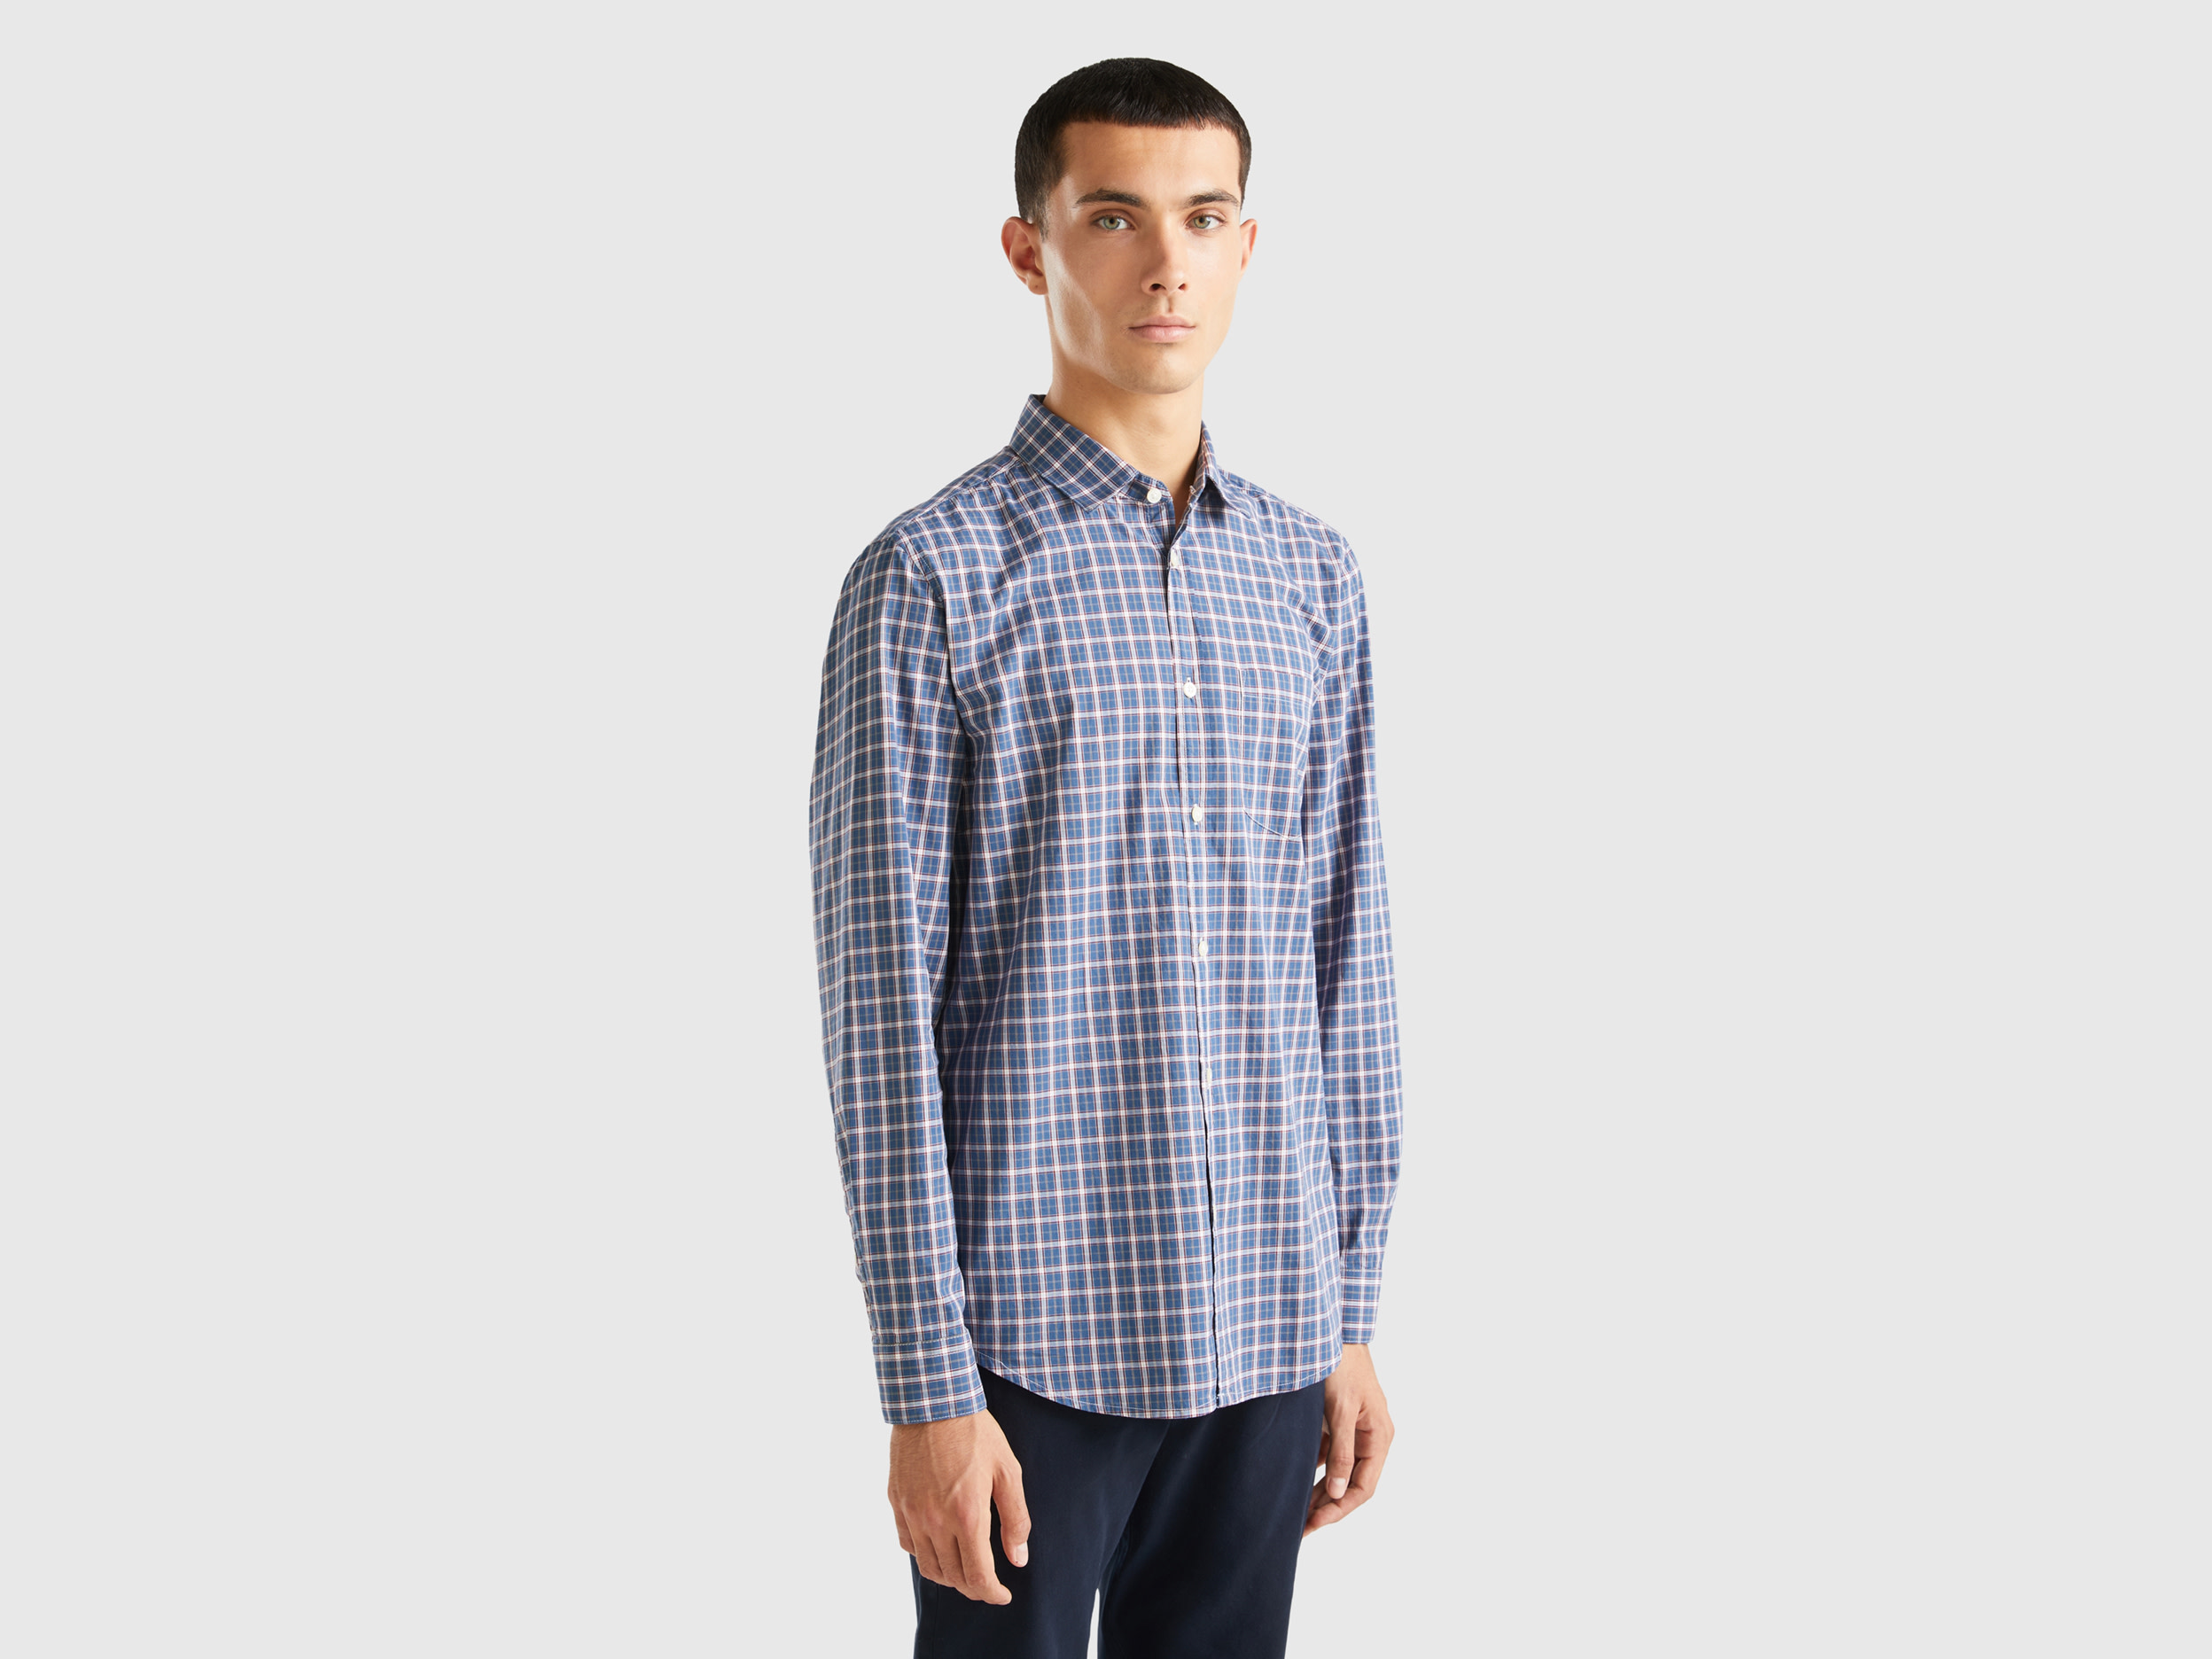 Benetton, Slim Fit Check Shirt, size XL, Multi-color, Men